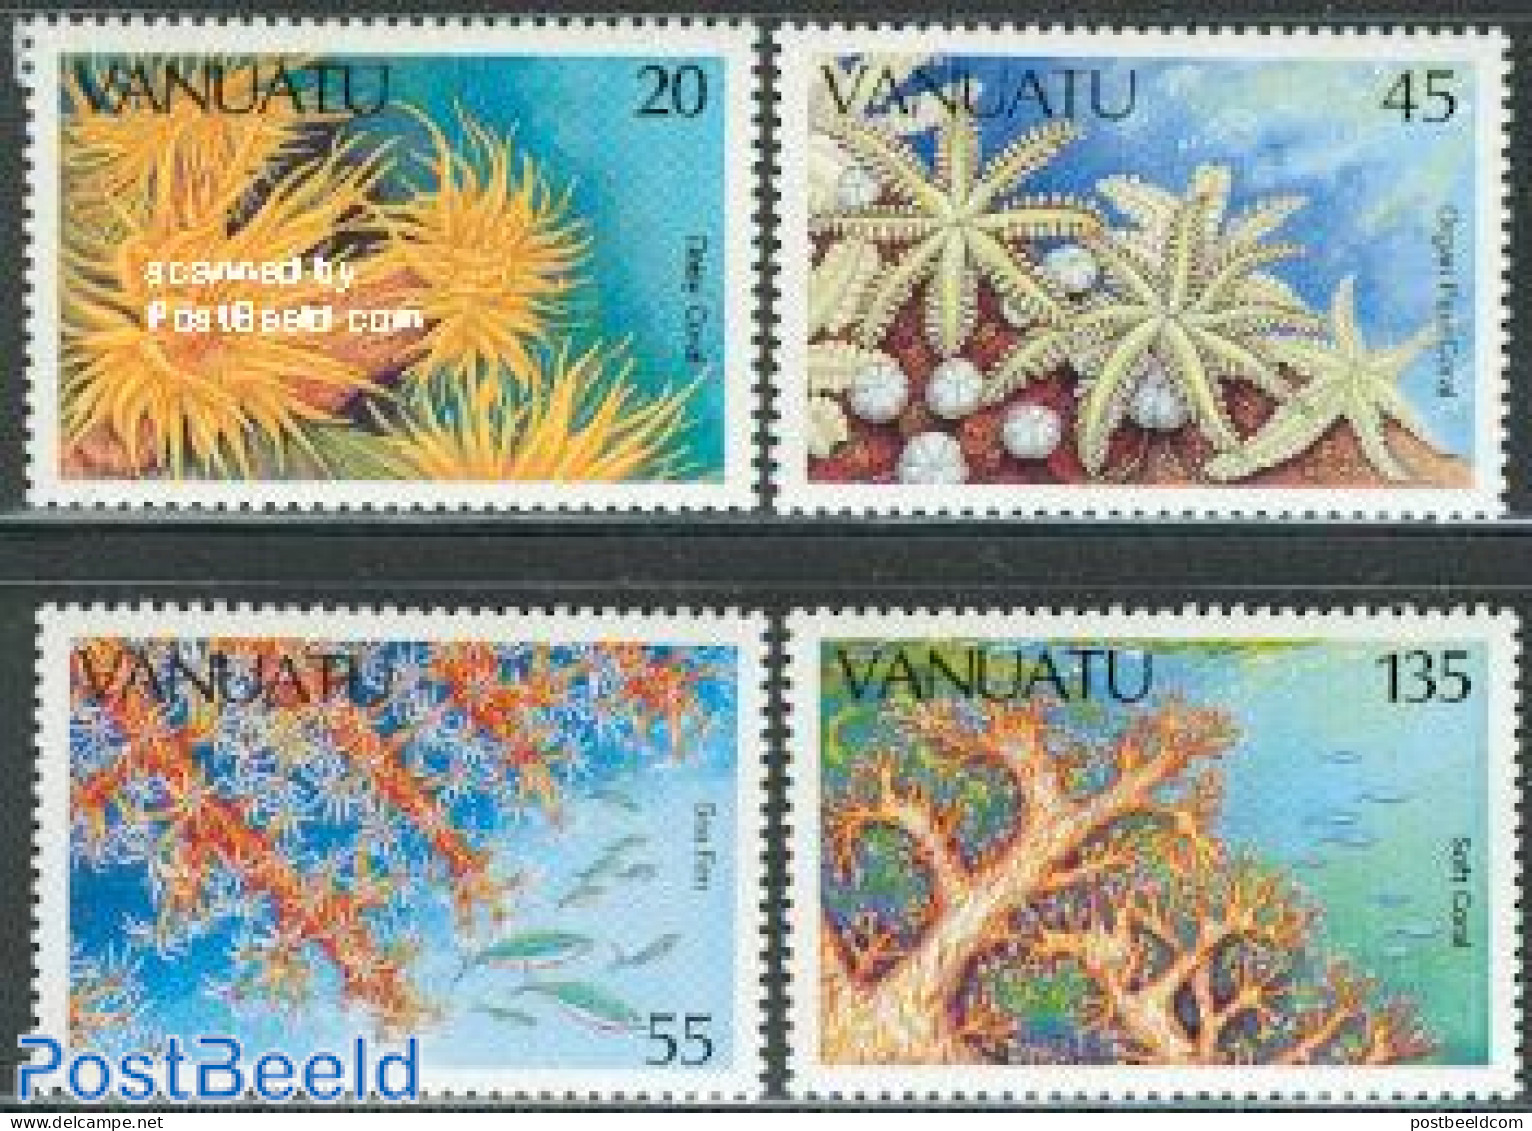 Vanuatu 1986 Marine Life, Corals 4v, Mint NH, Nature - Vanuatu (1980-...)